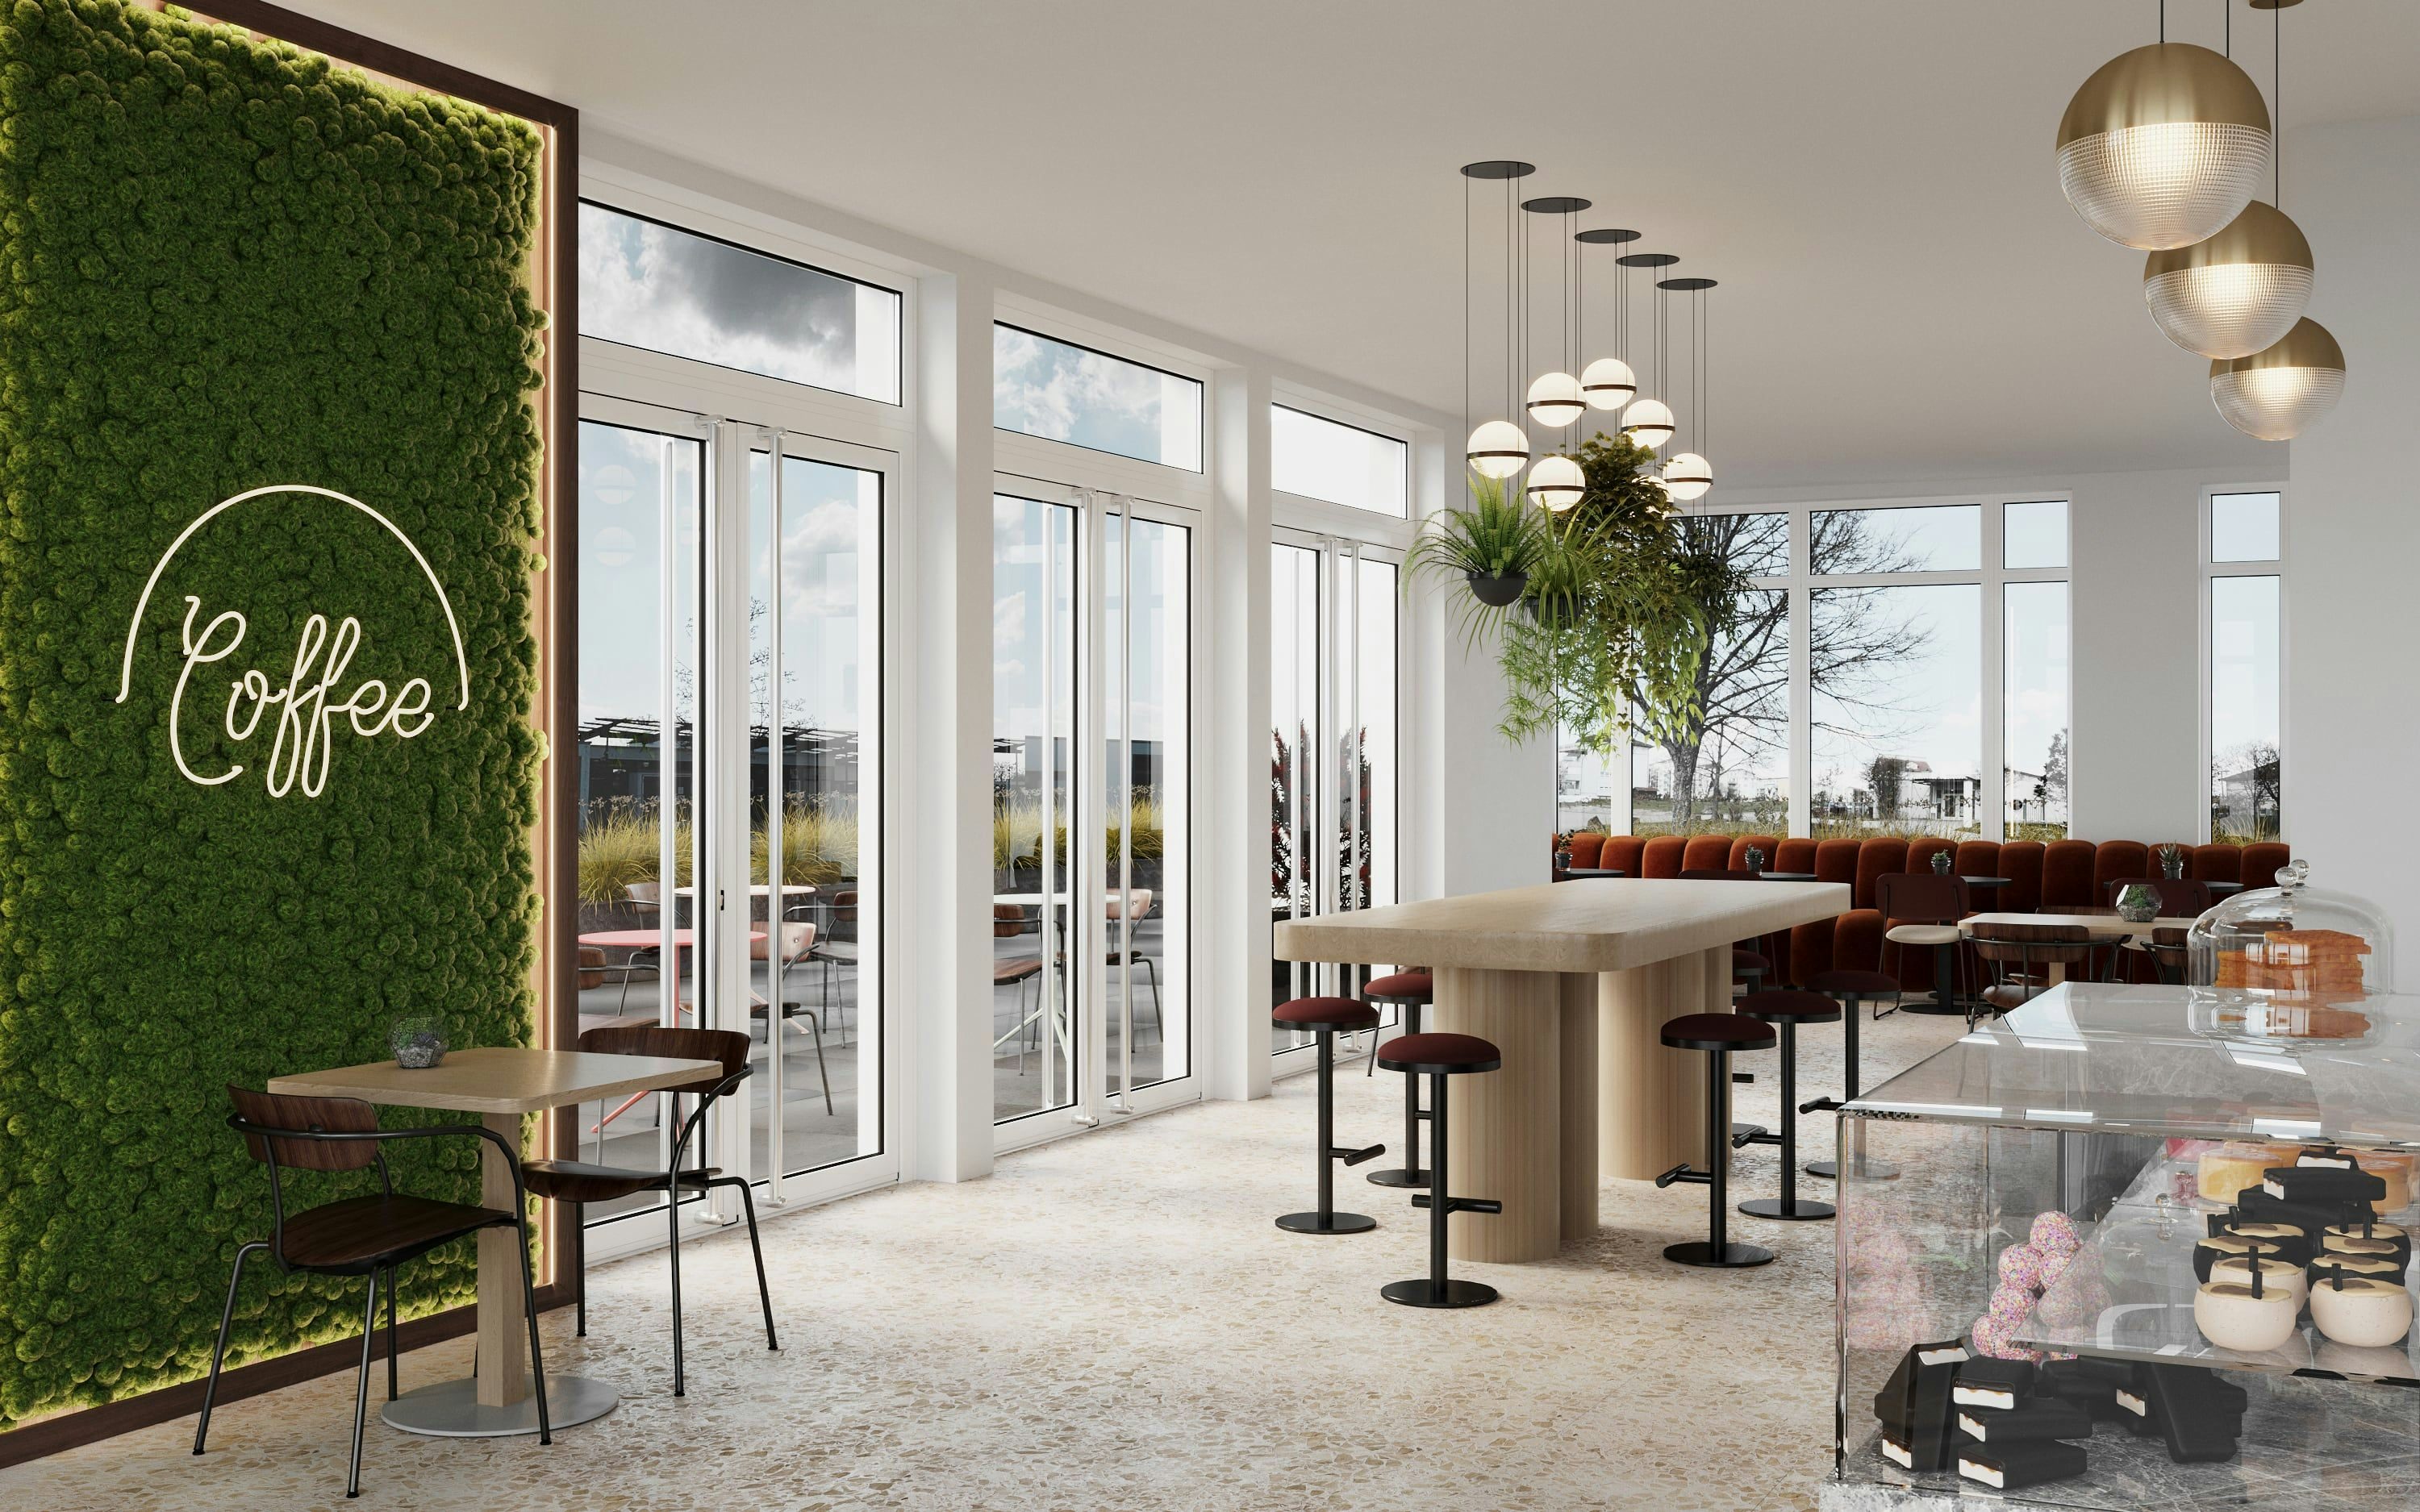 3D Visualisierung eines Coffee shop / Cafés mit Terrasse in einem neuen Mehrfamilienhaus in Künzelsau, Deutschland